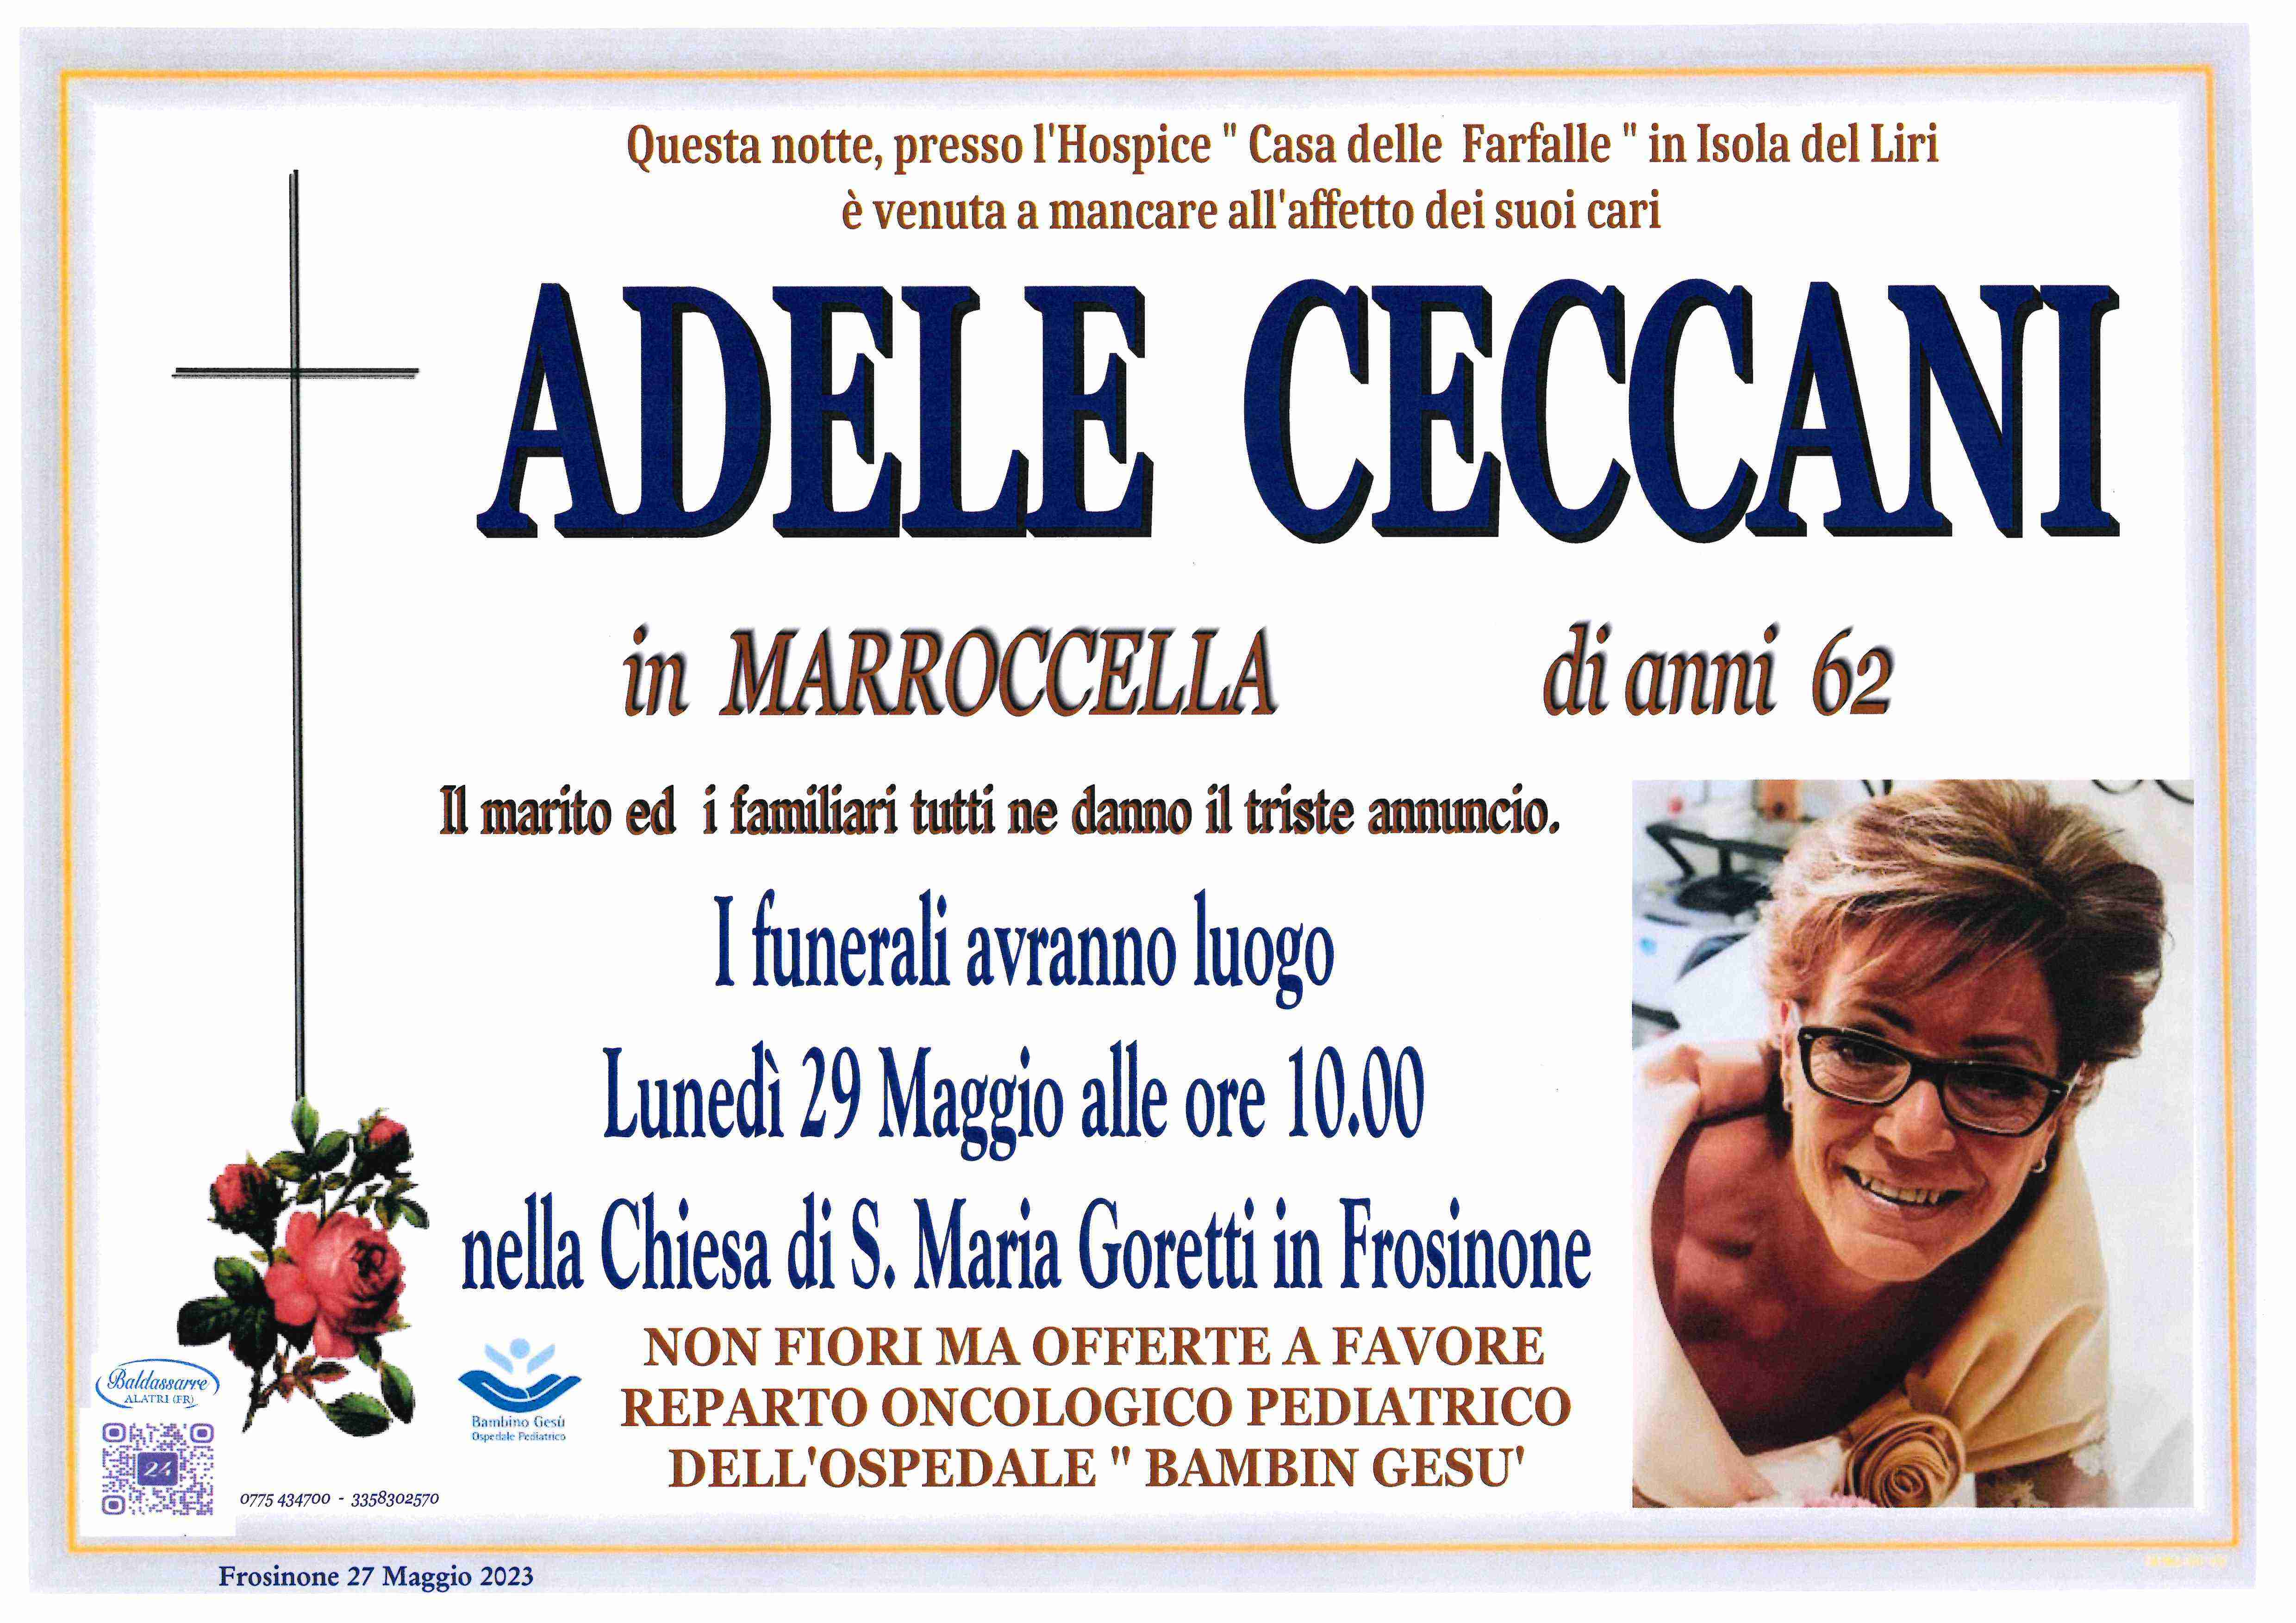 Adele Ceccani